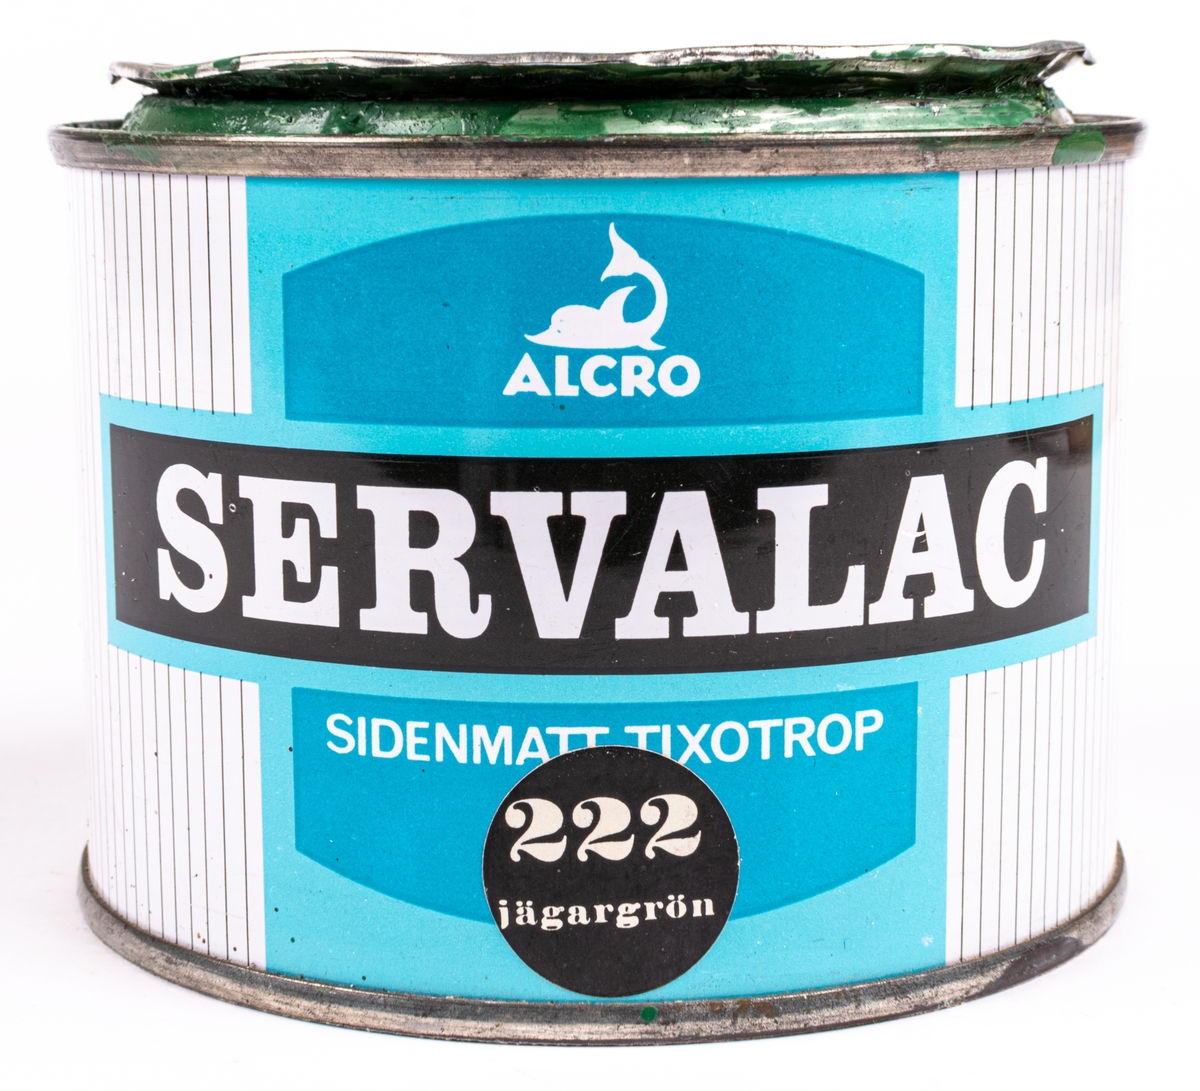 En plåtburk med målarfärg från Alcro. Servalac -Sidenmatt Tixotrop - nr 222 "Jägargrön".